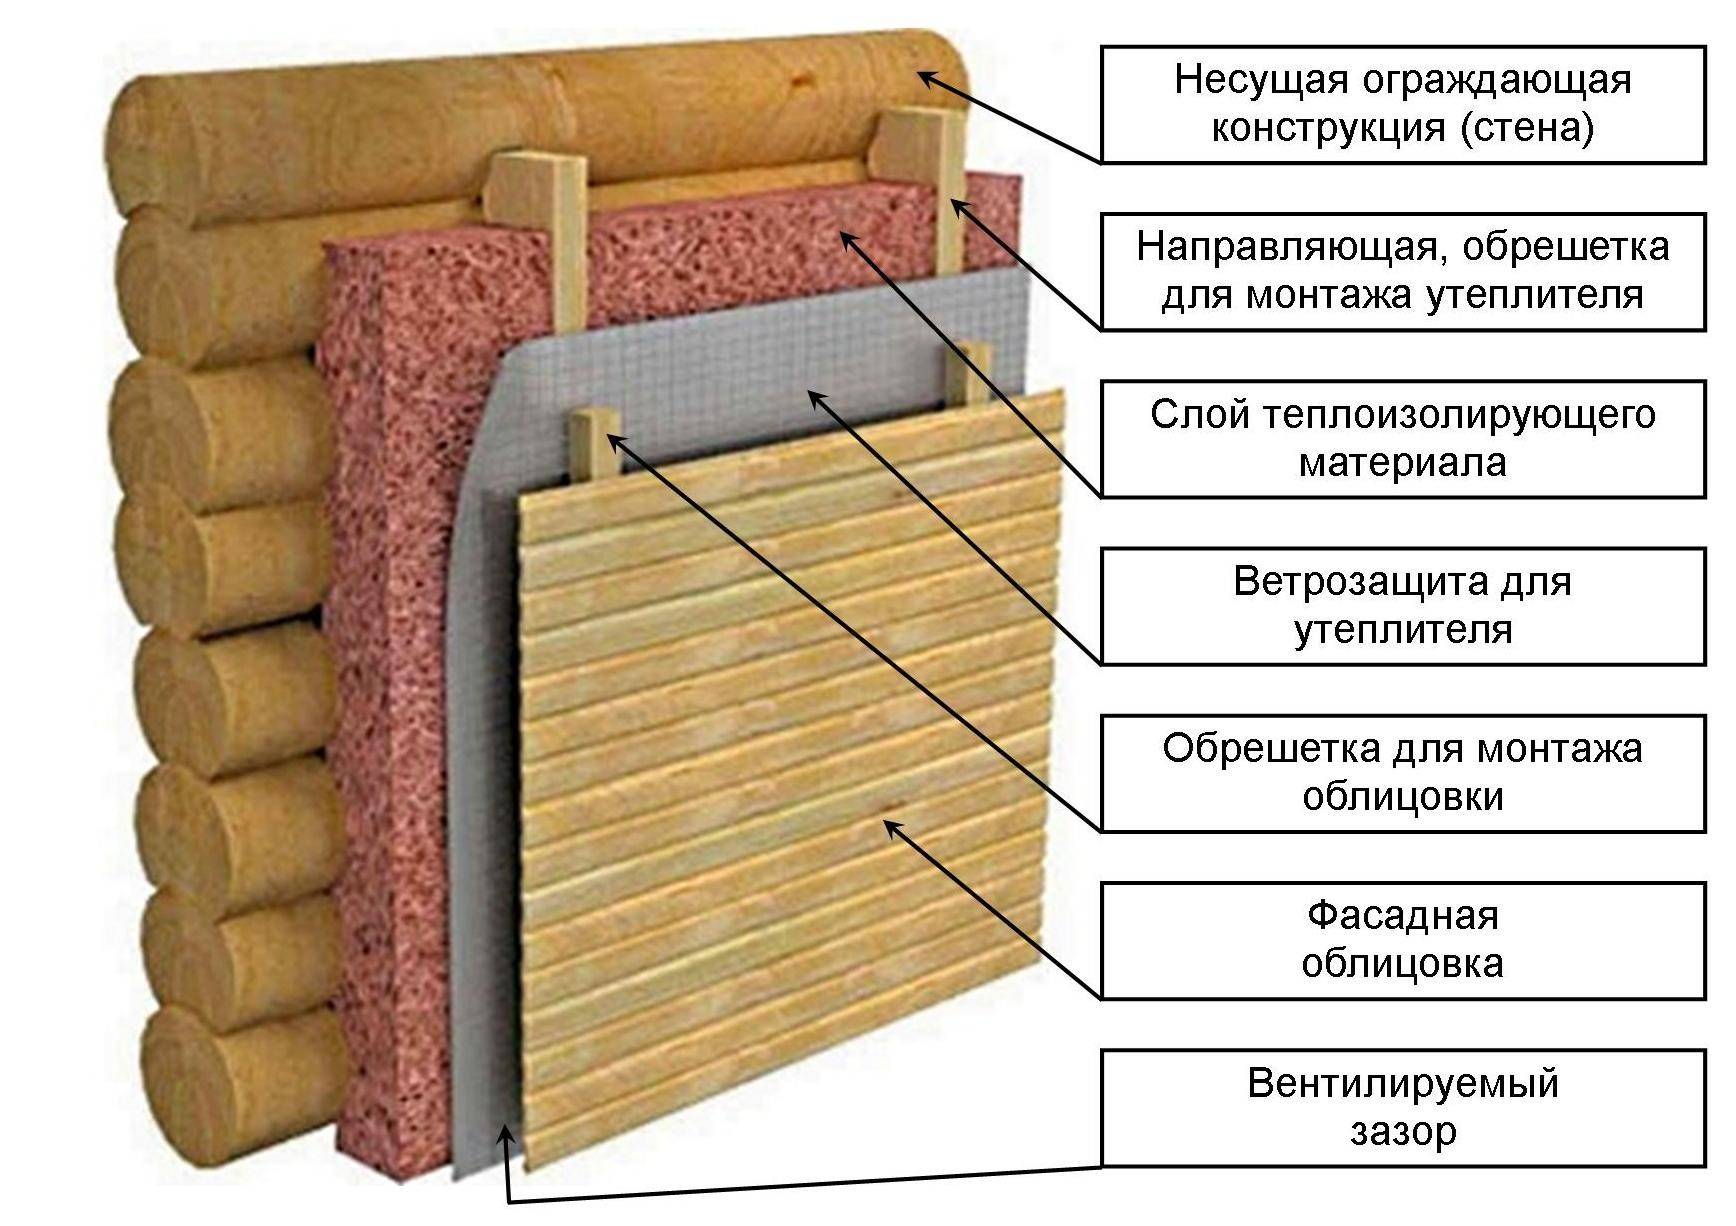 Как правильно крепить утеплитель к стене грибками?